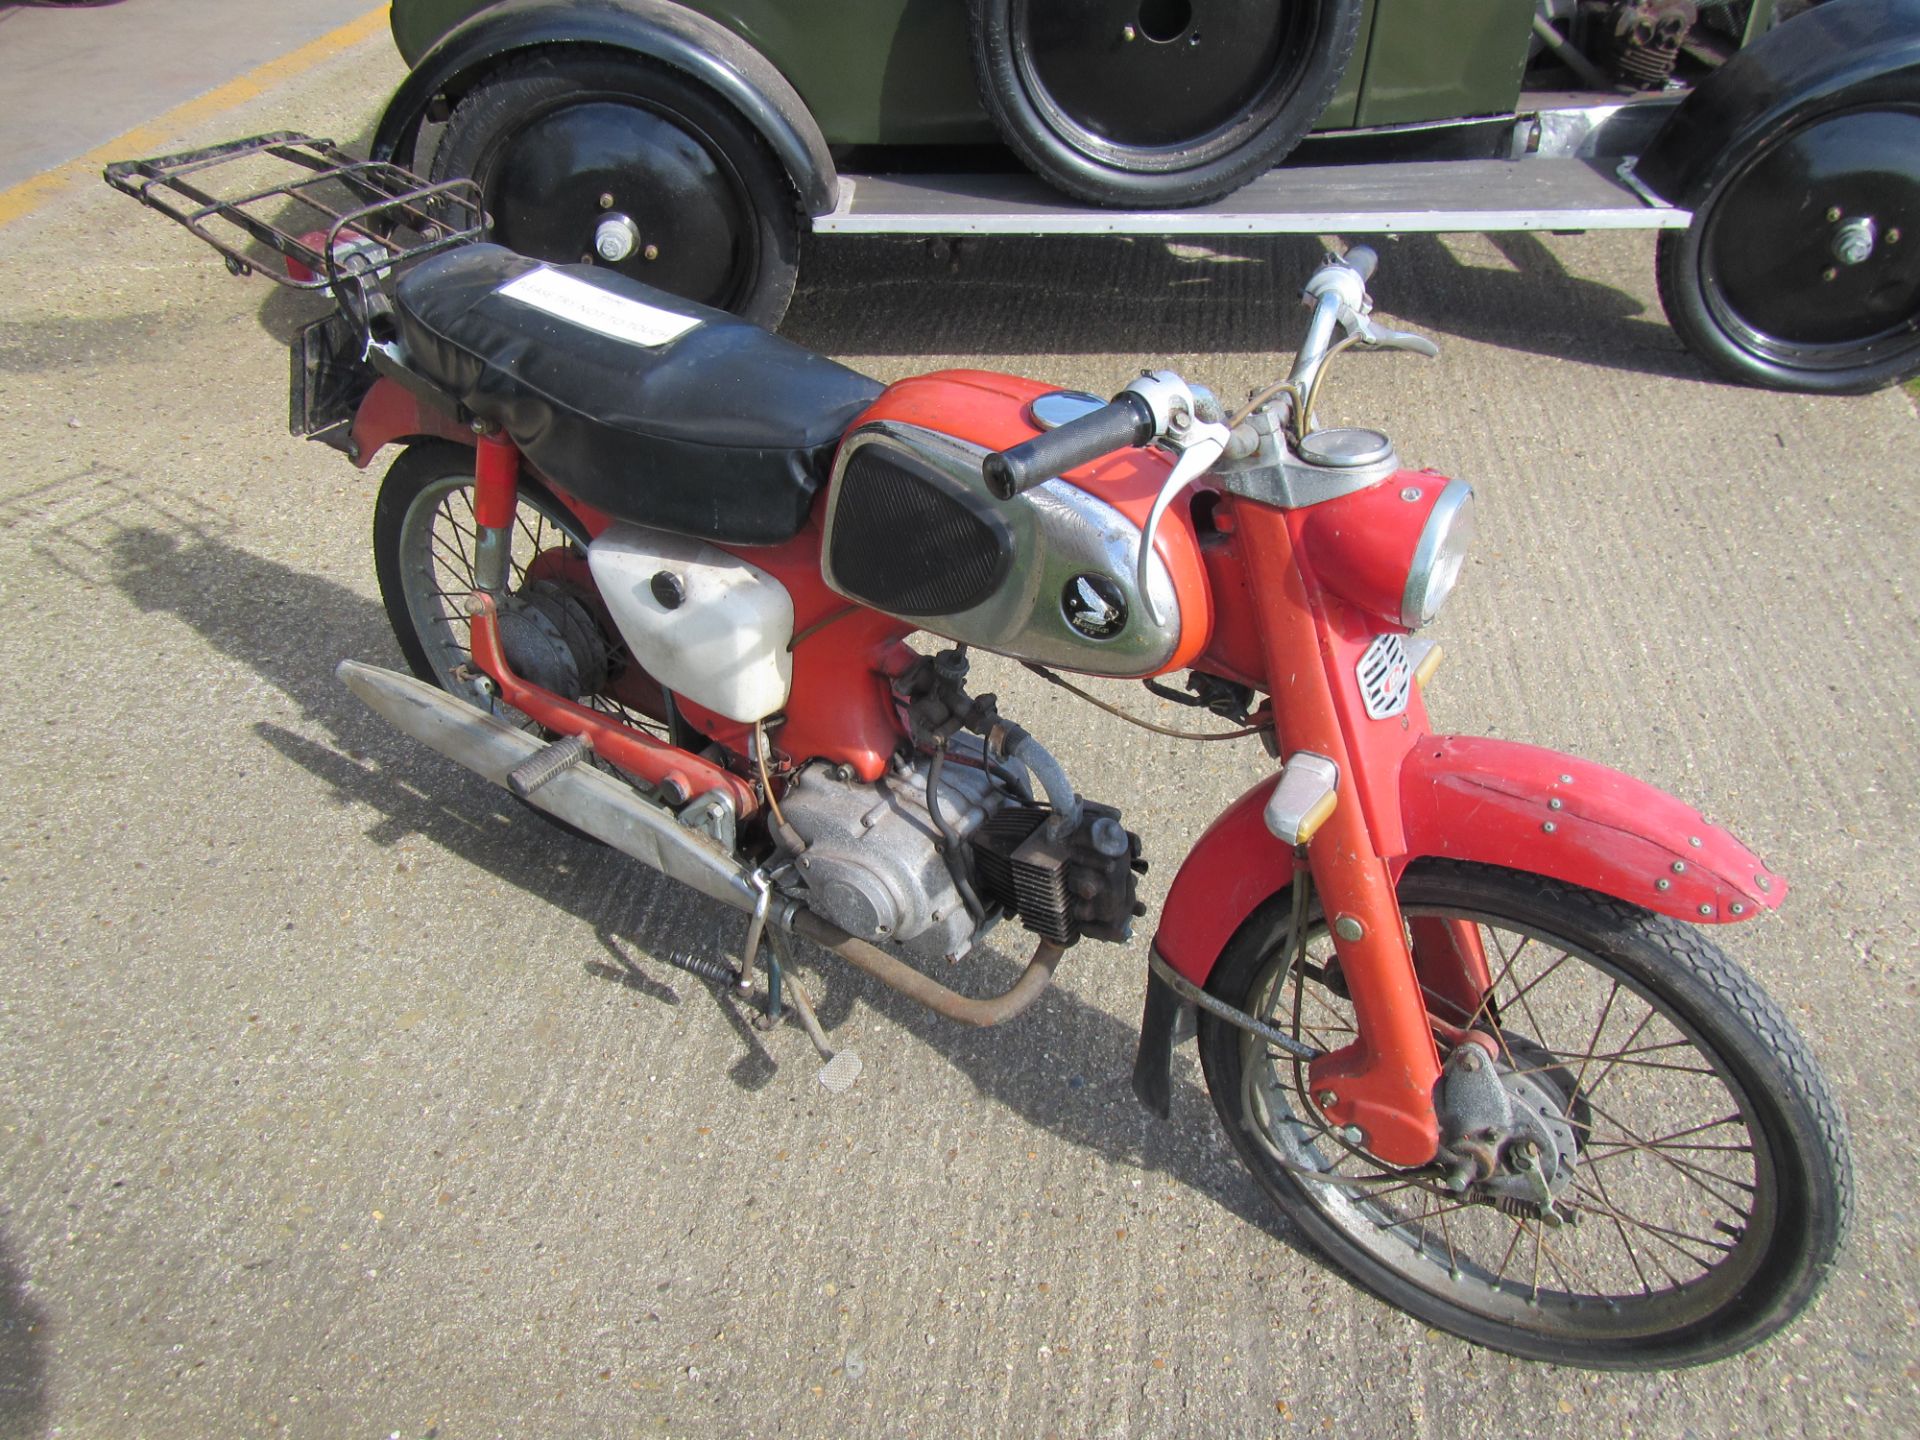 1963 49cc Honda C110 Sport 50 Reg. No. PJE 688 Frame No. 280038 Engine No. 56072 Ex Holkham Hall - Image 2 of 5